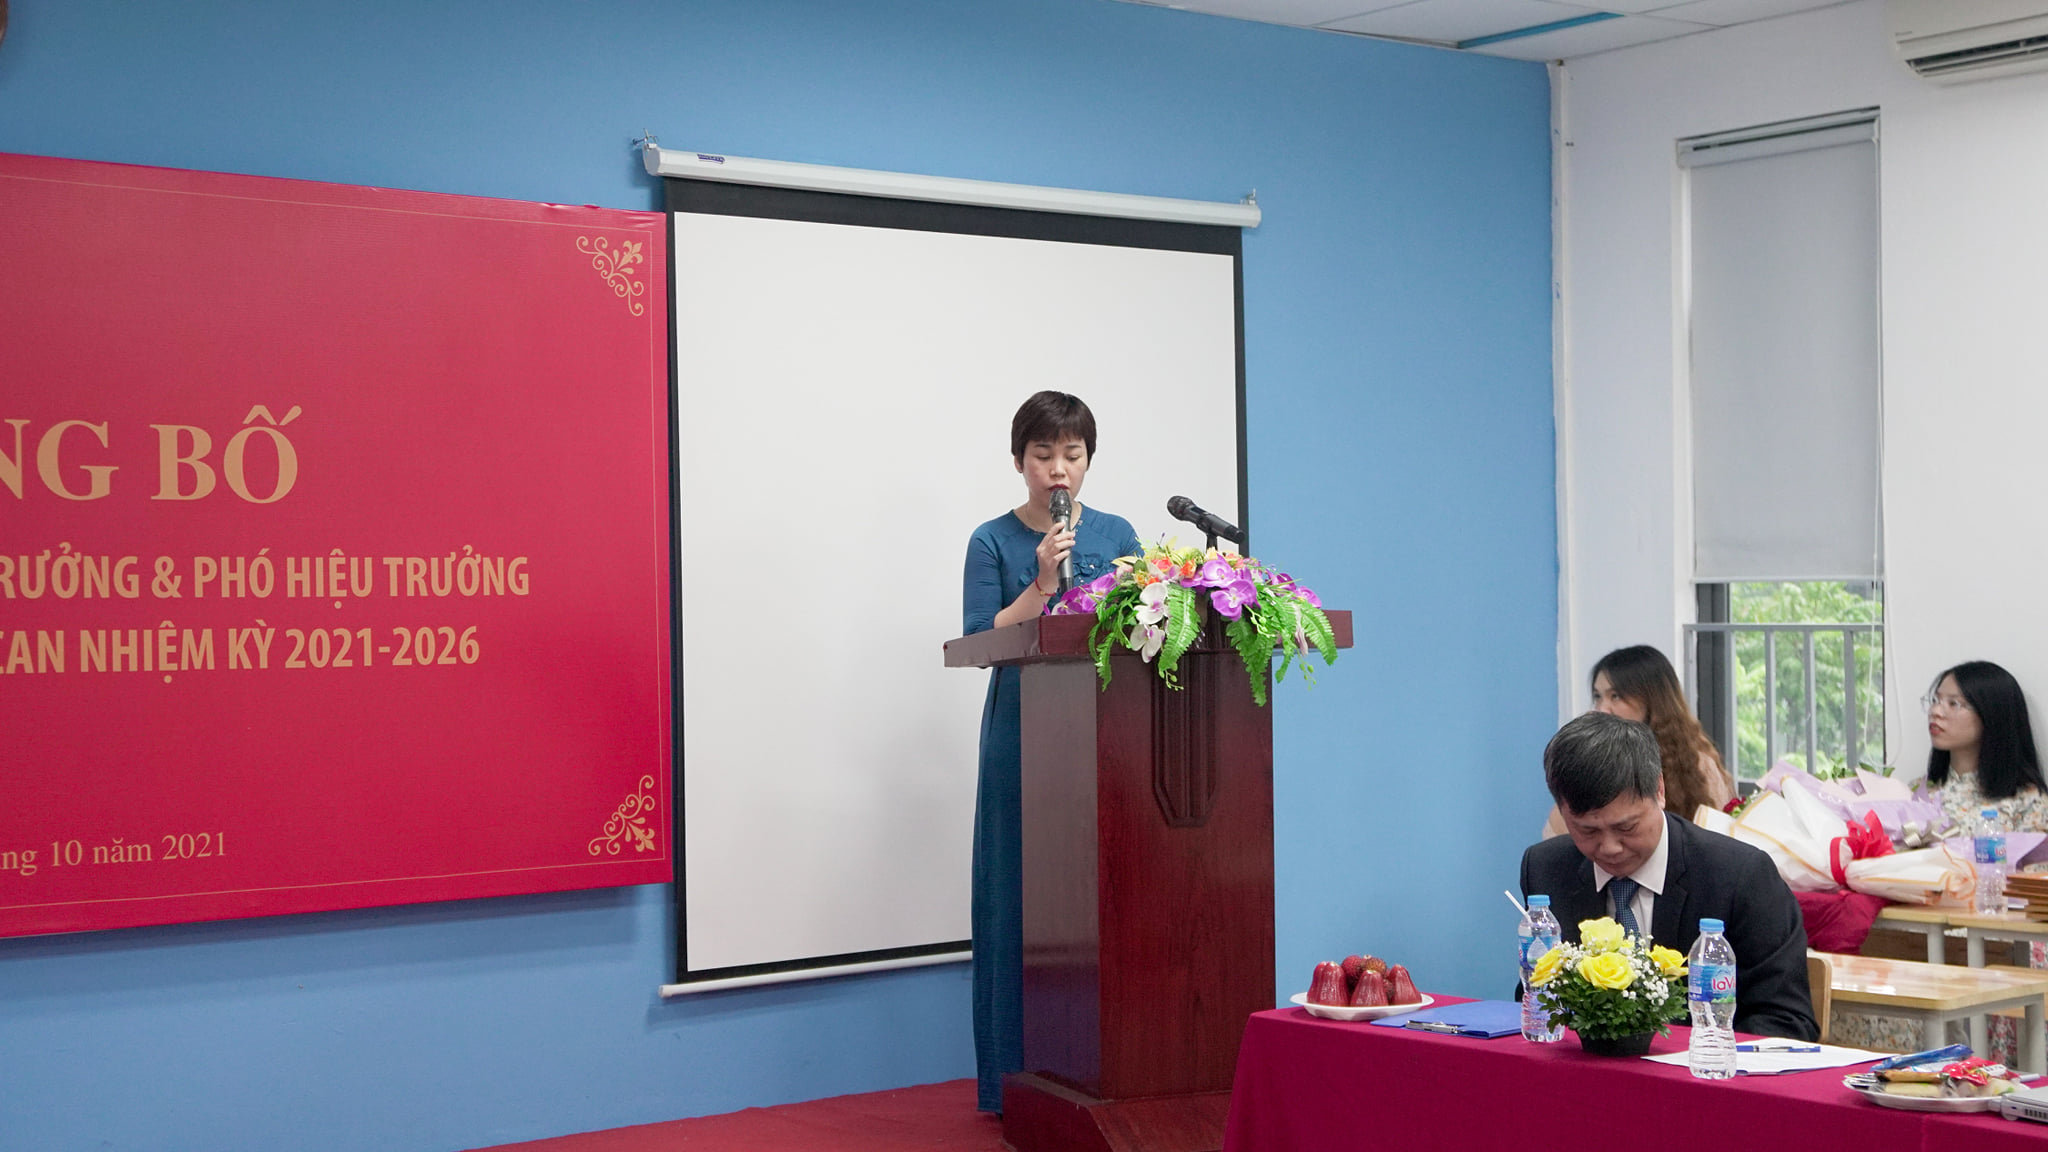 Phó hiệu trưởng - cô Nguyễn Thị Giang phát biểu trong buổi lễ